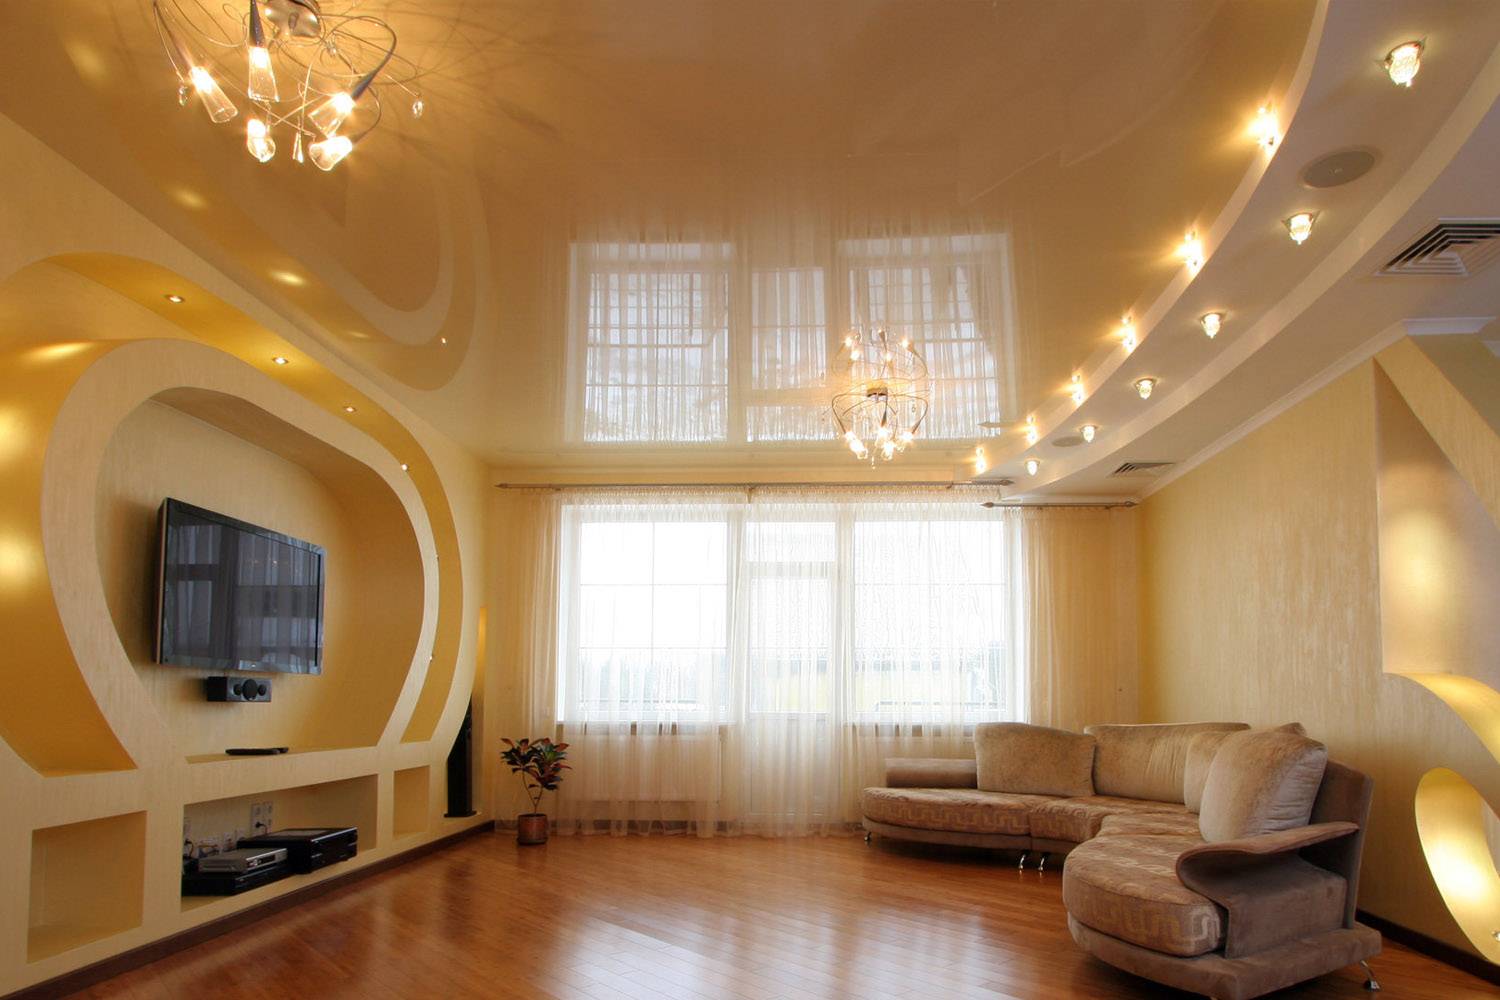 Натяжные потолки для зала: фото красивых вариантов дизайна гостиной